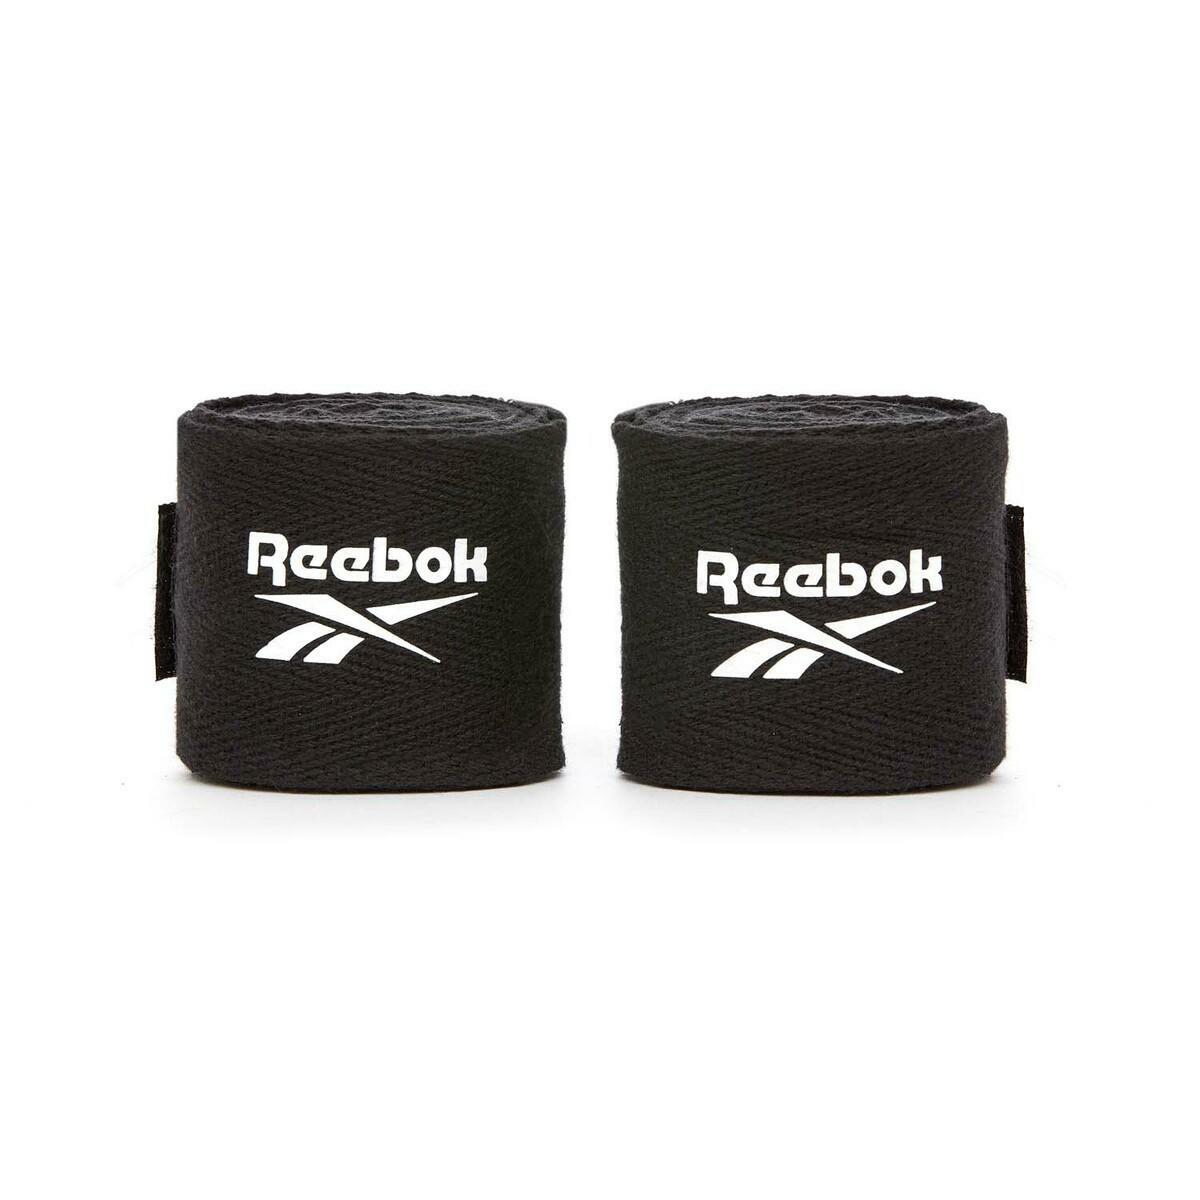 Reebok 12oz Boxing Gloves and Wraps Set PRSCB-11117